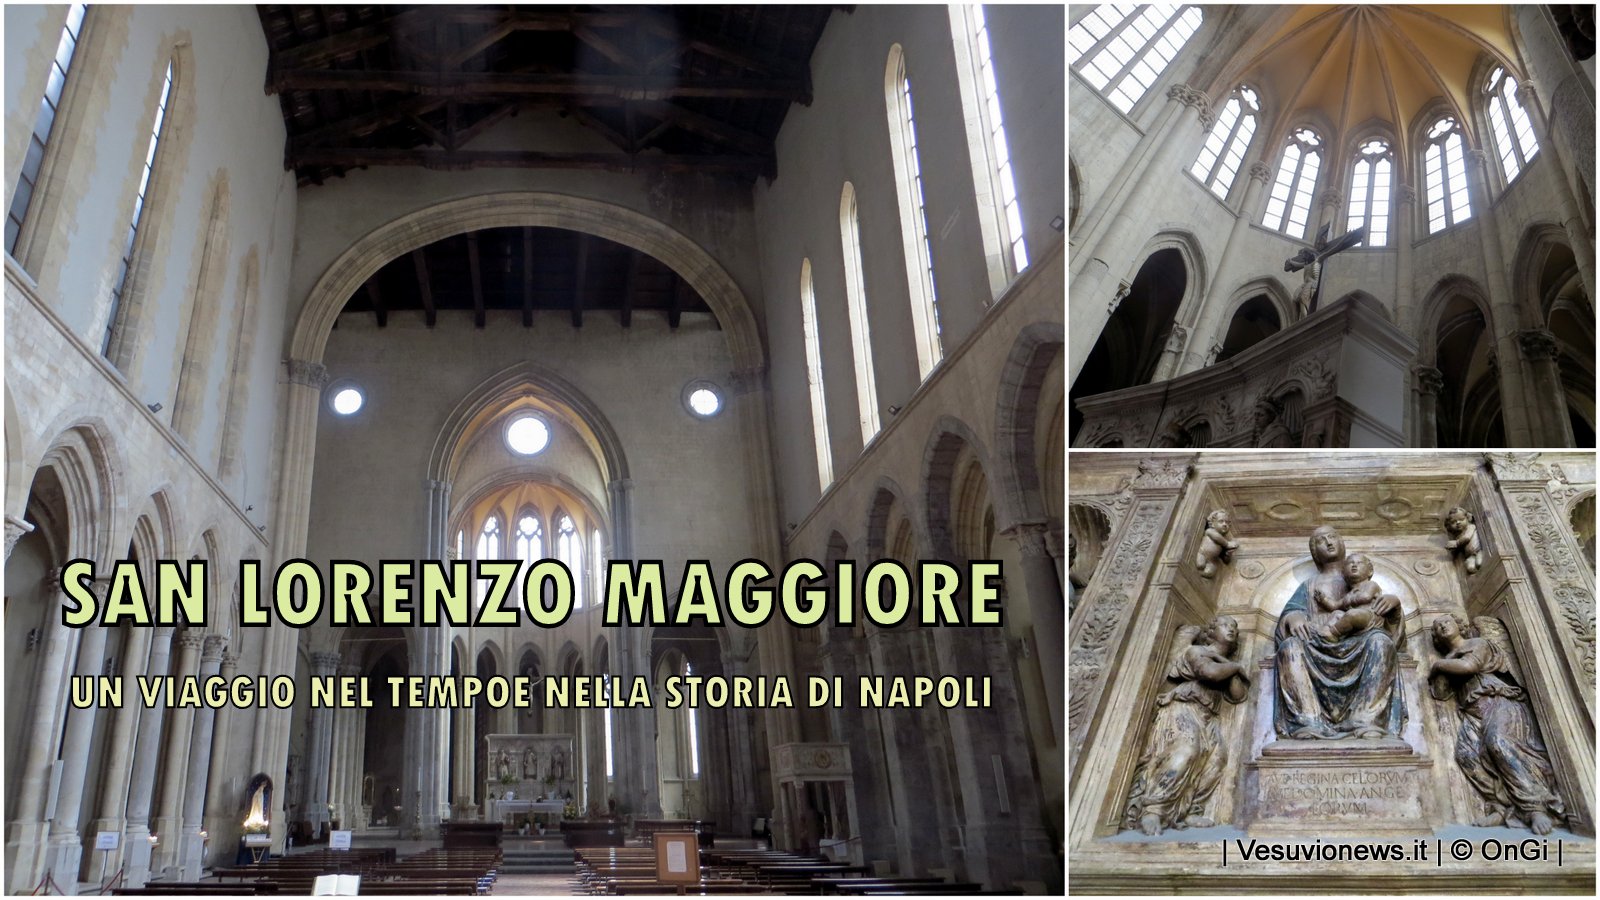 San Lorenzo maggiore, un viaggio nel tempo e nella storia di Napoli